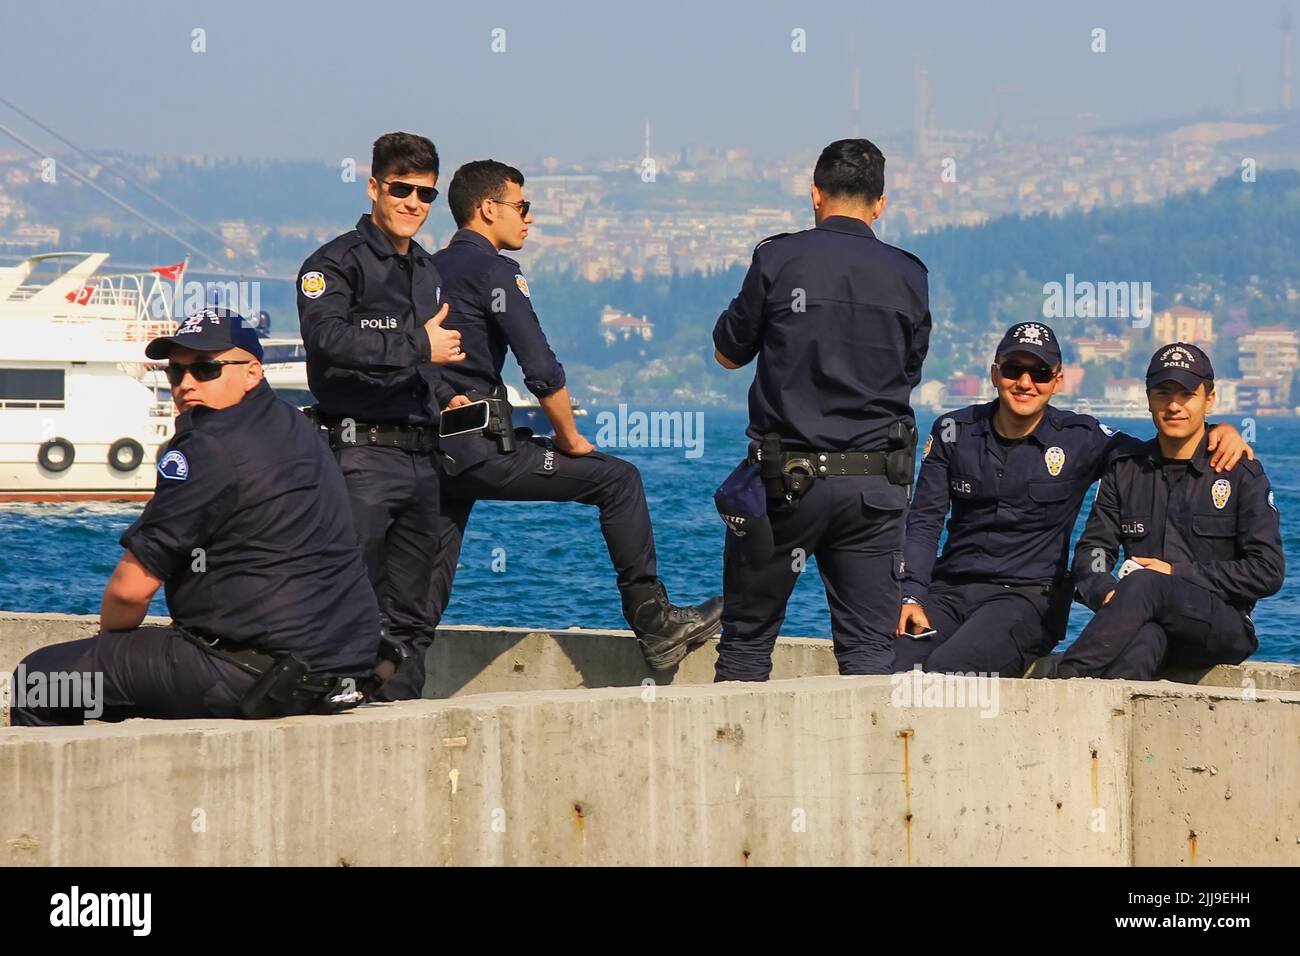 Grupo de jóvenes oficiales de policía turcos con elegante uniforme de policía descansan sobre el fondo borroso del Bósforo. Estambul, Turquía, mayo de 2015 Foto de stock